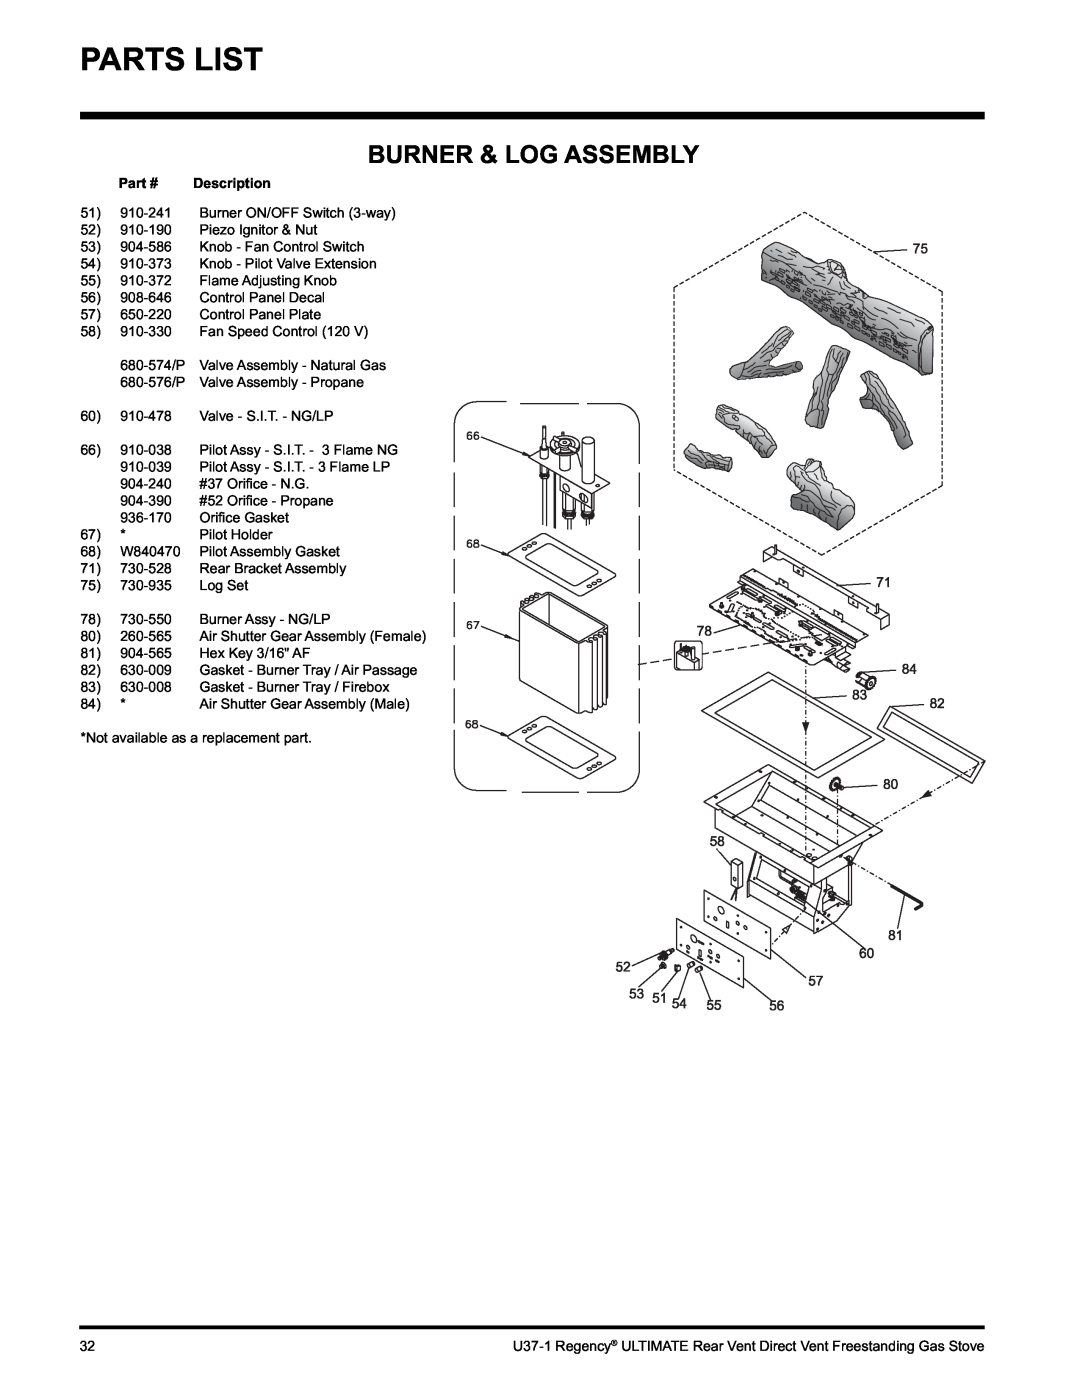 Regency U37-LP1, U37-NG1 installation manual Burner & Log Assembly 